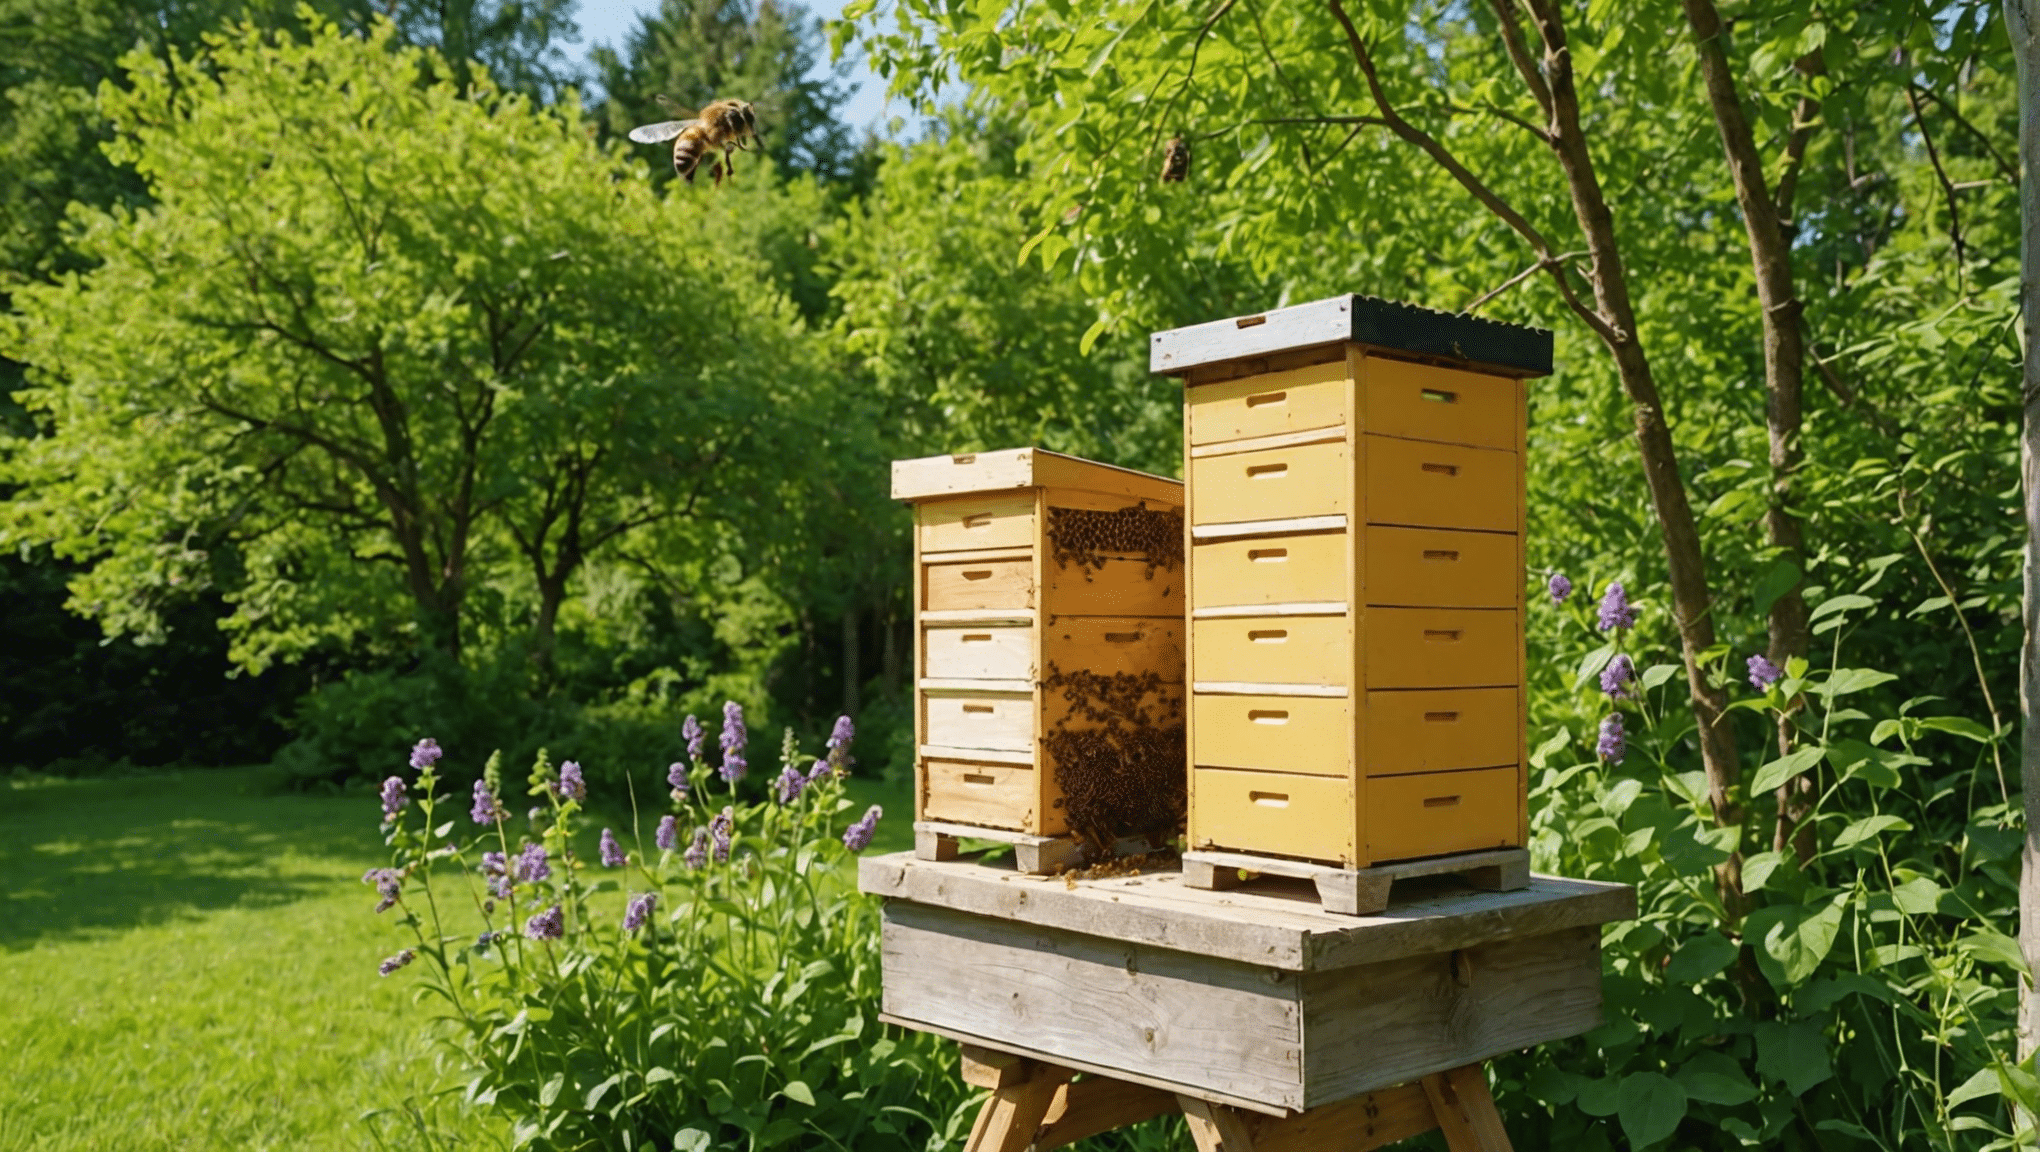 Encuentre todo lo que necesita saber sobre las colmenas de abejas naturales, incluido cómo se fabrican, sus beneficios y cómo cuidarlas en esta guía completa.